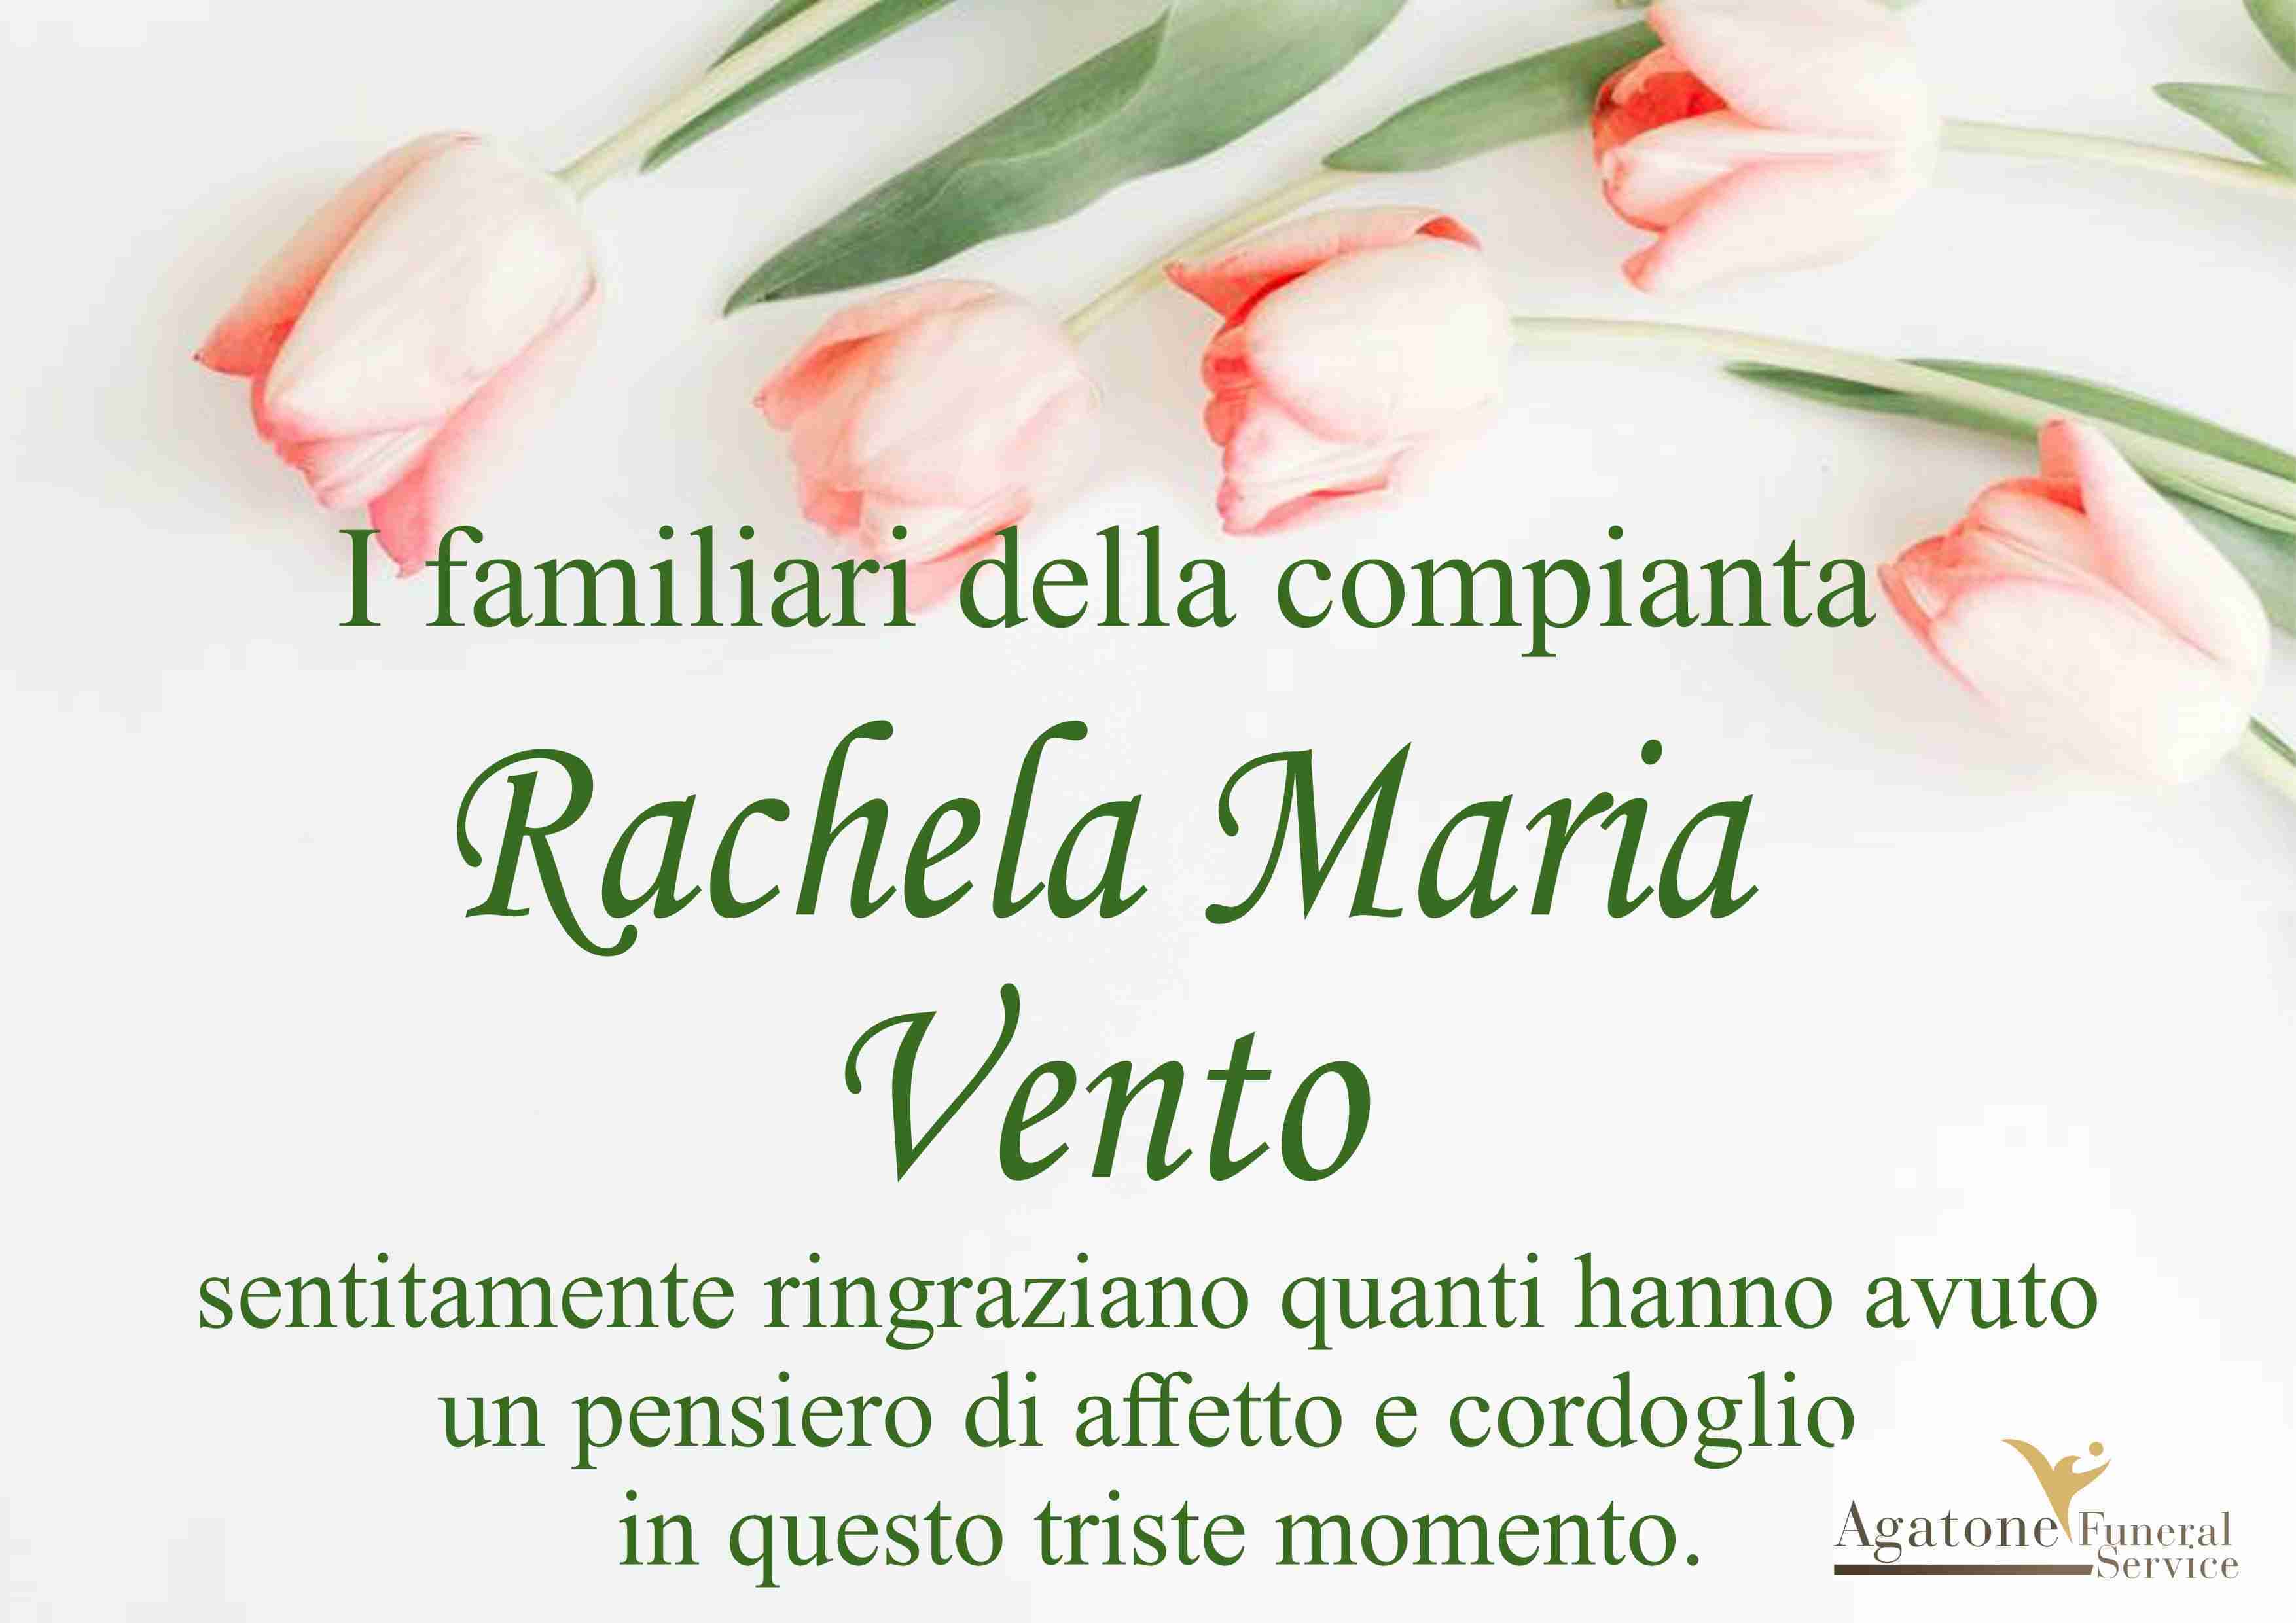 Rachela Maria Vento